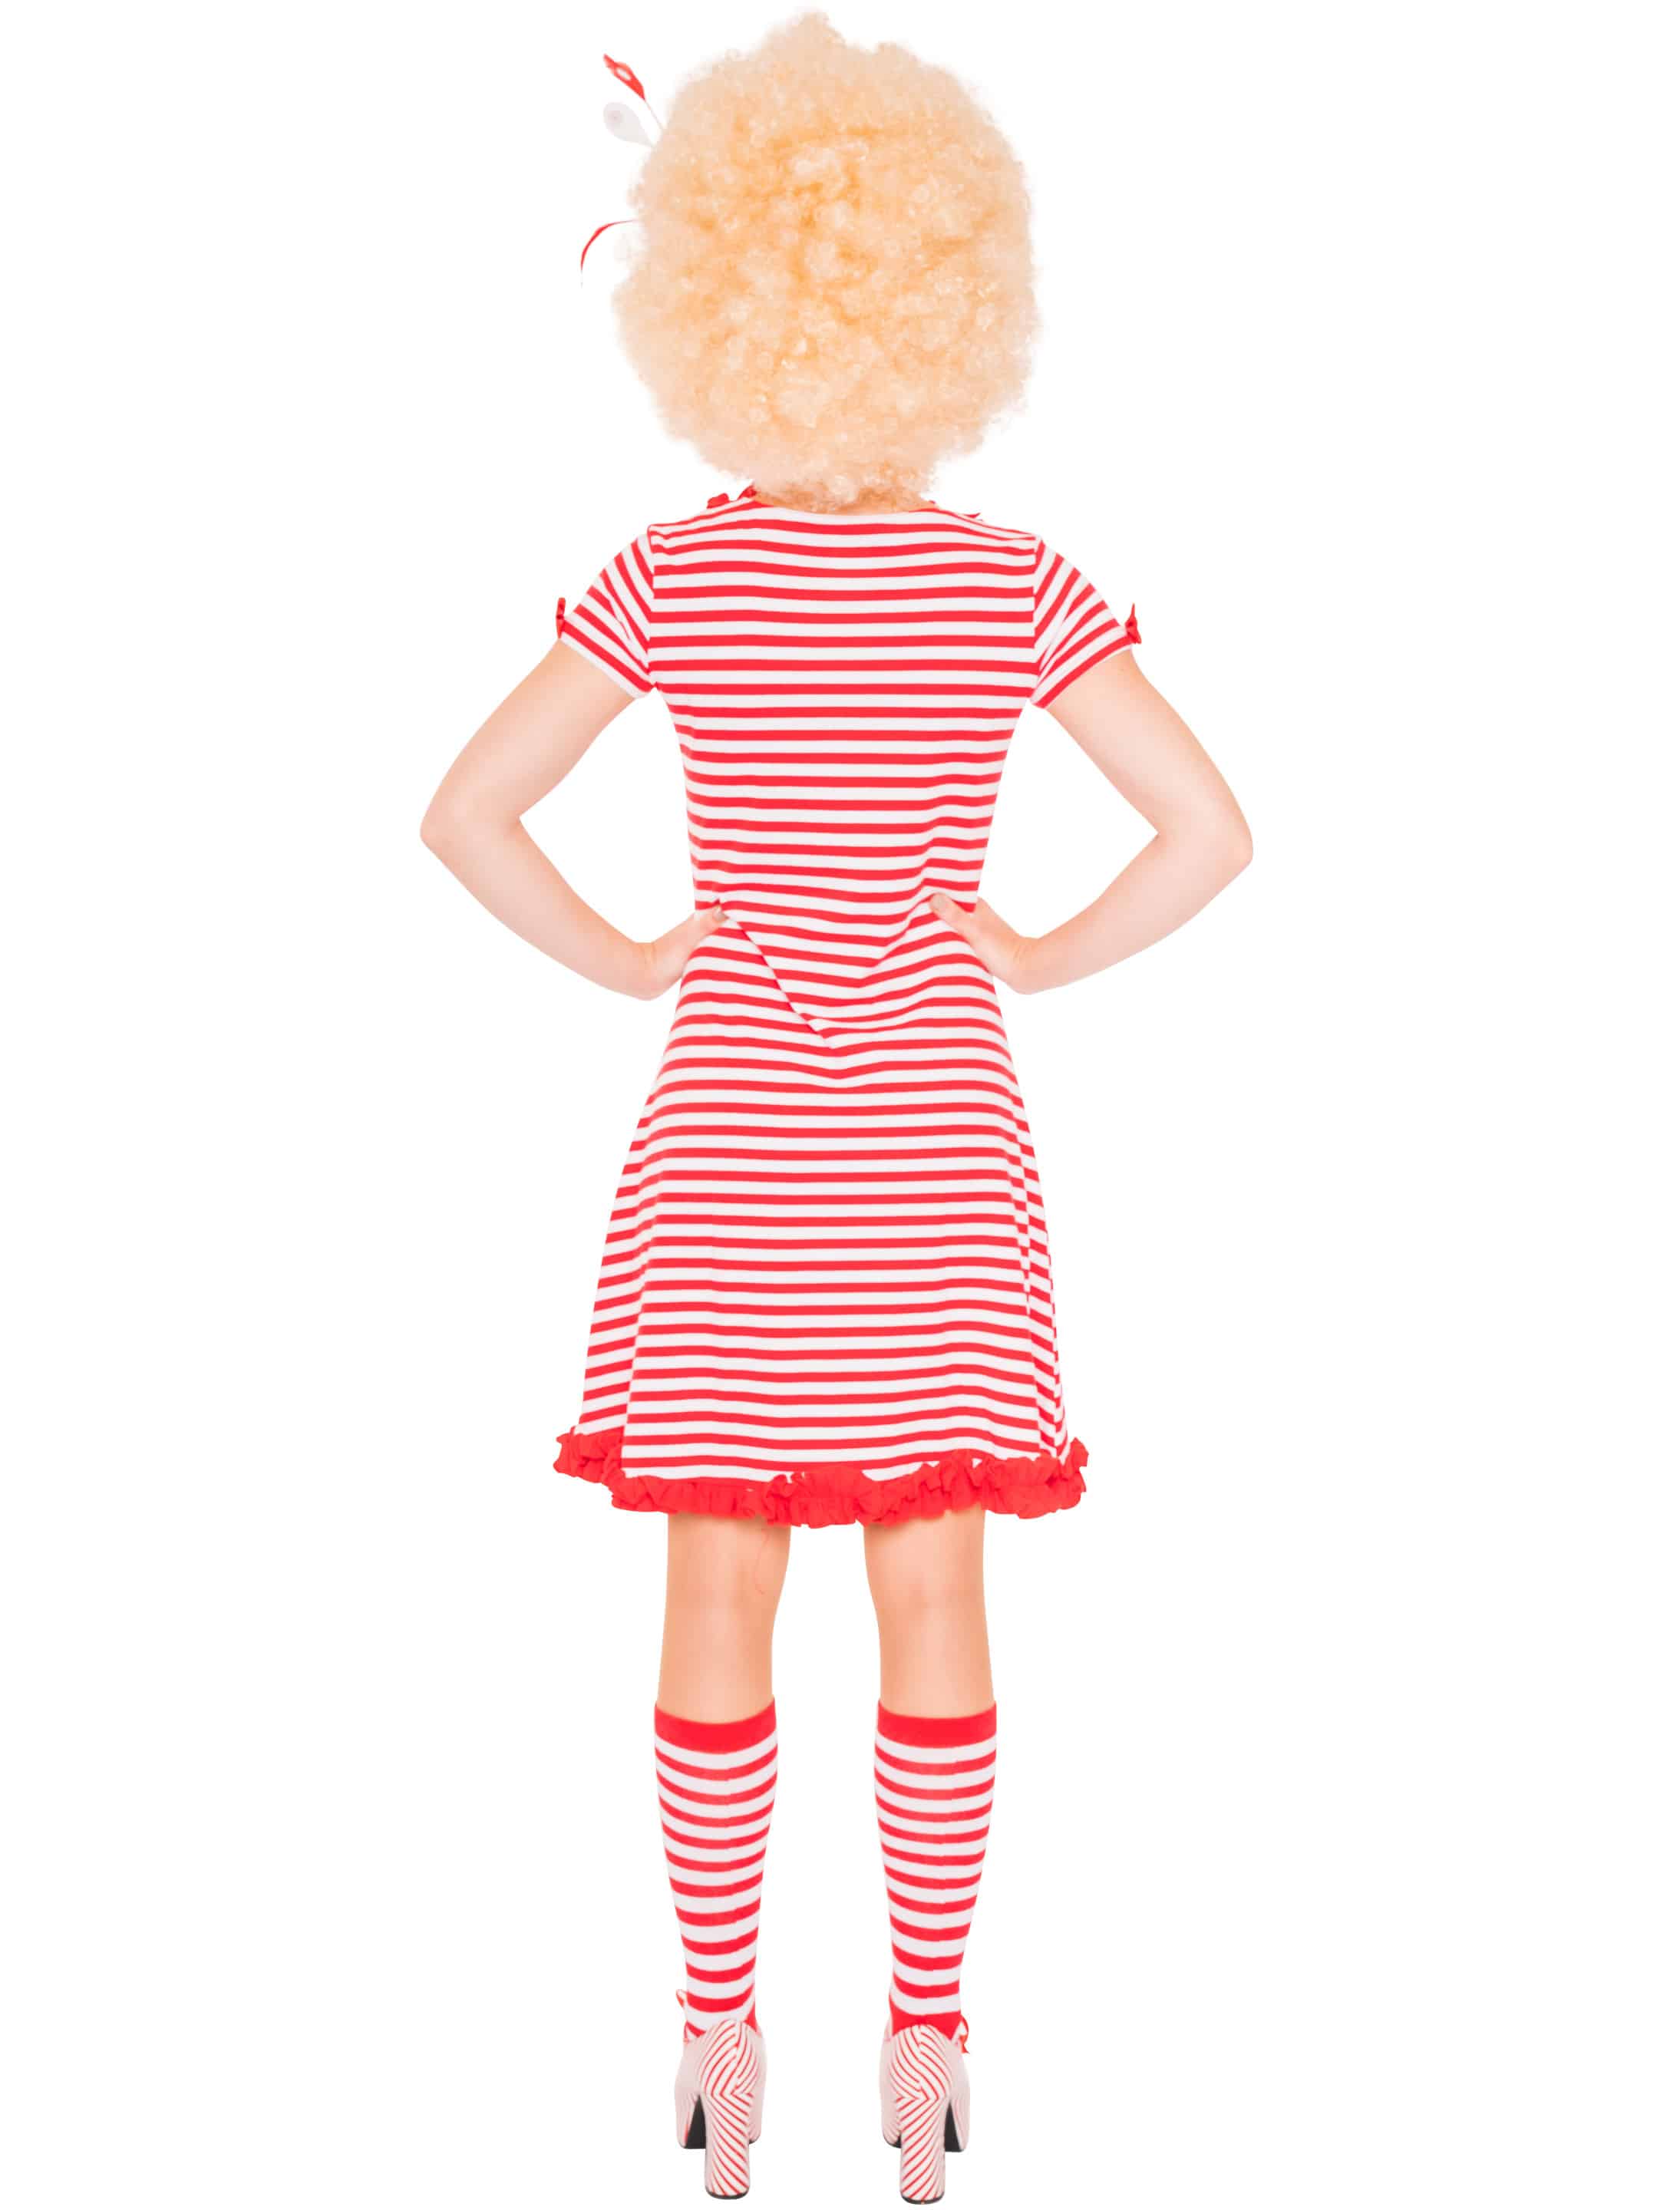 Kleid gestreift mit Herz auf Tasche Damen rot/weiß 2XL/3XL